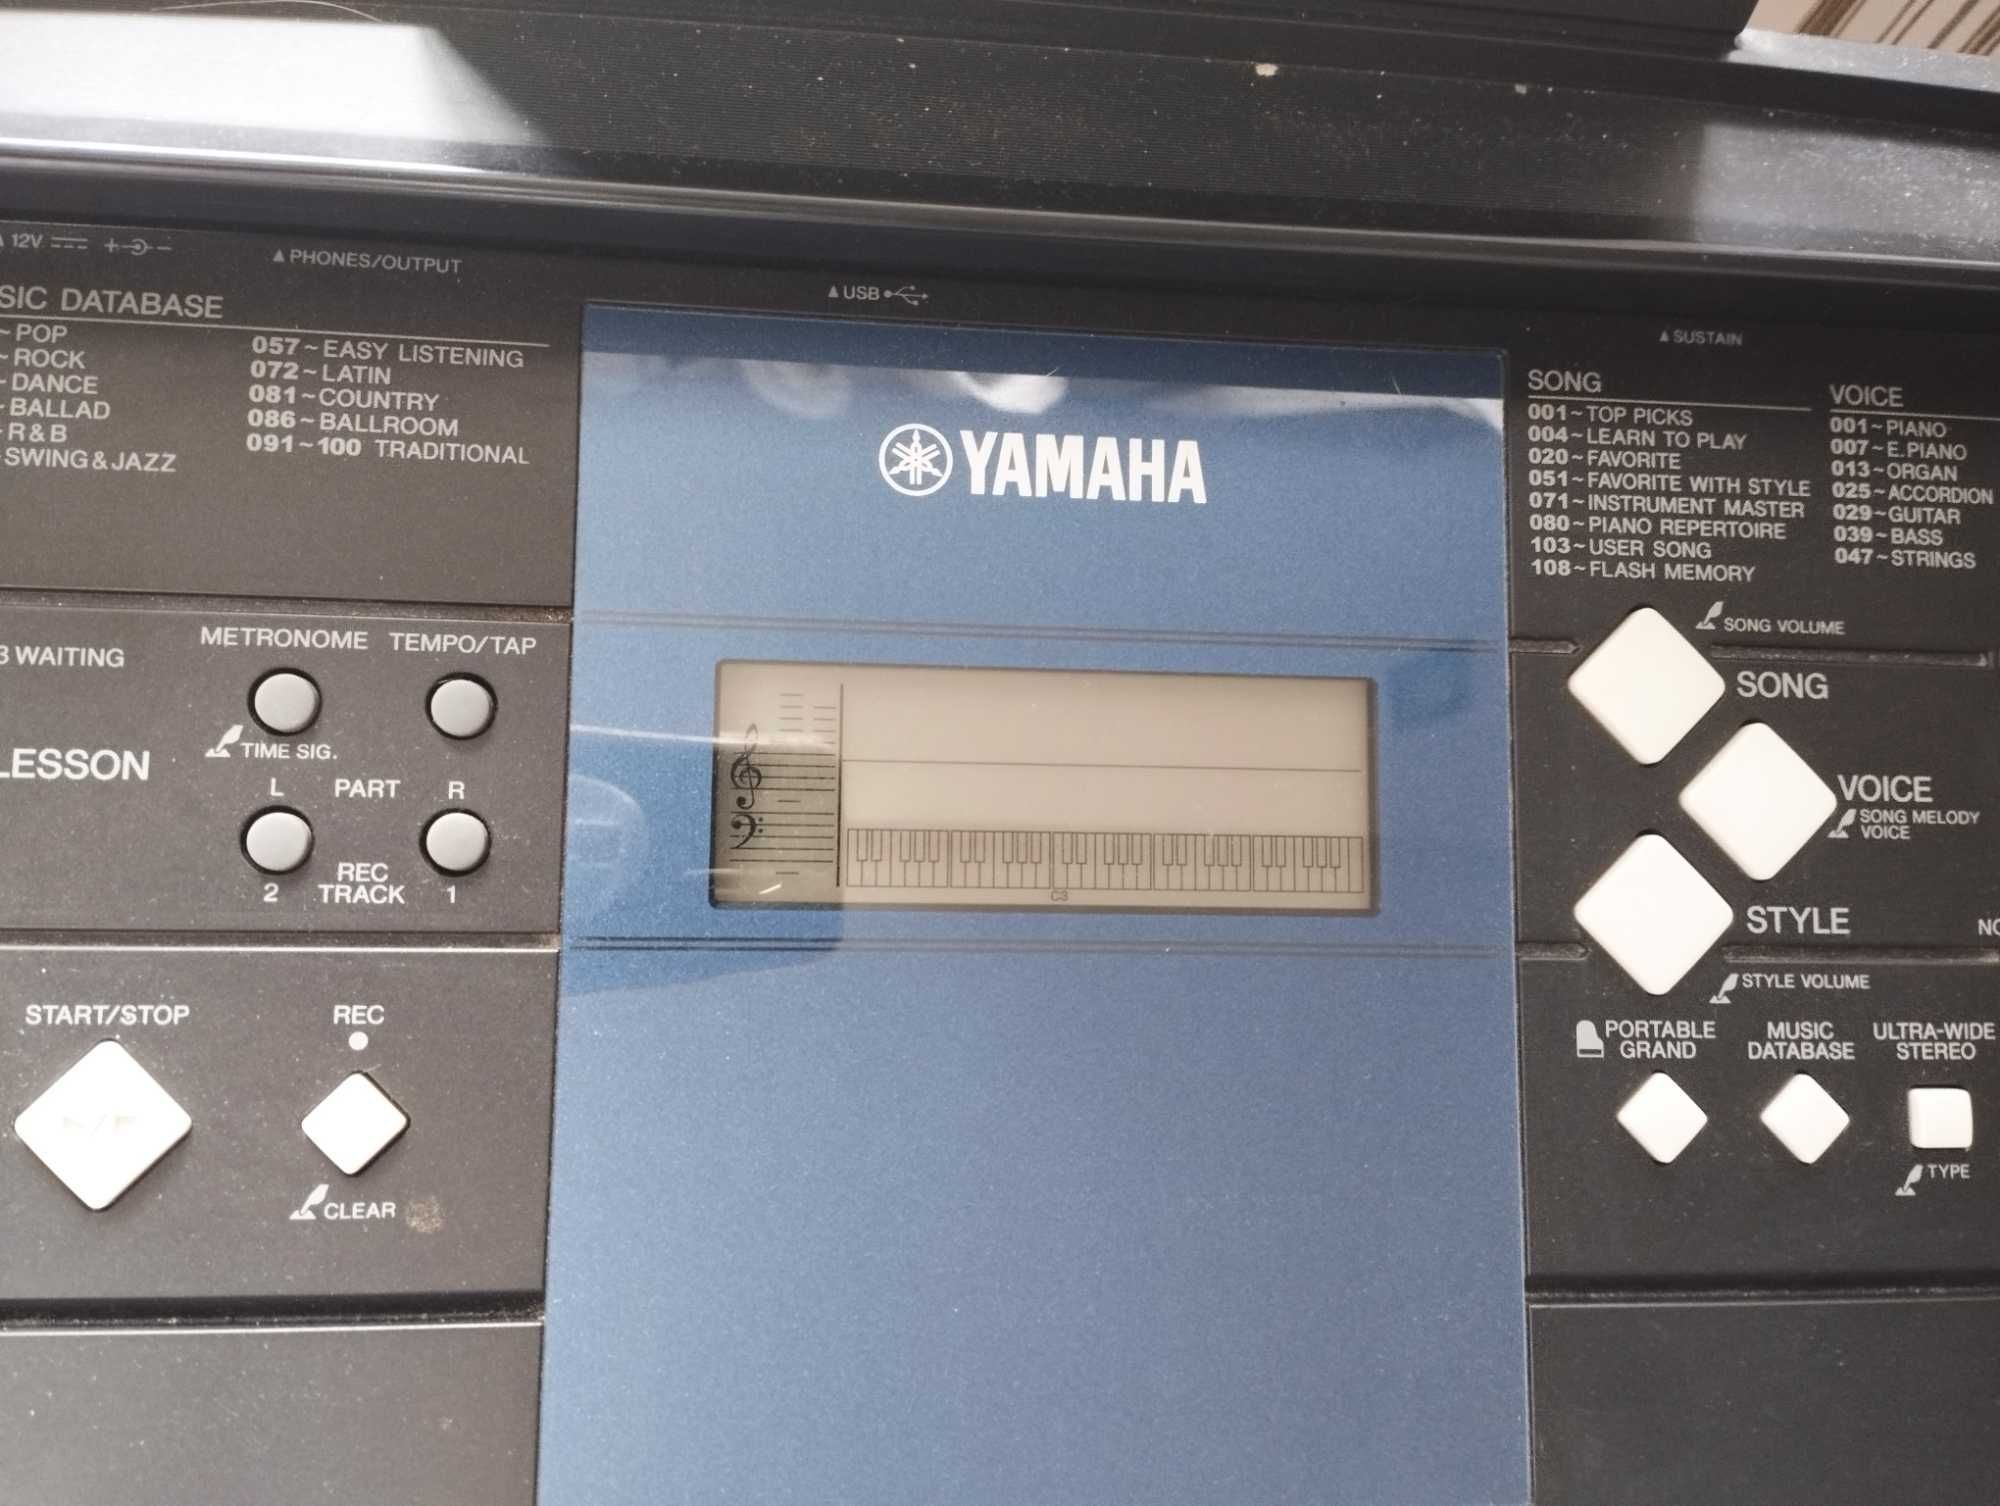 Keyboard Yamaha E333